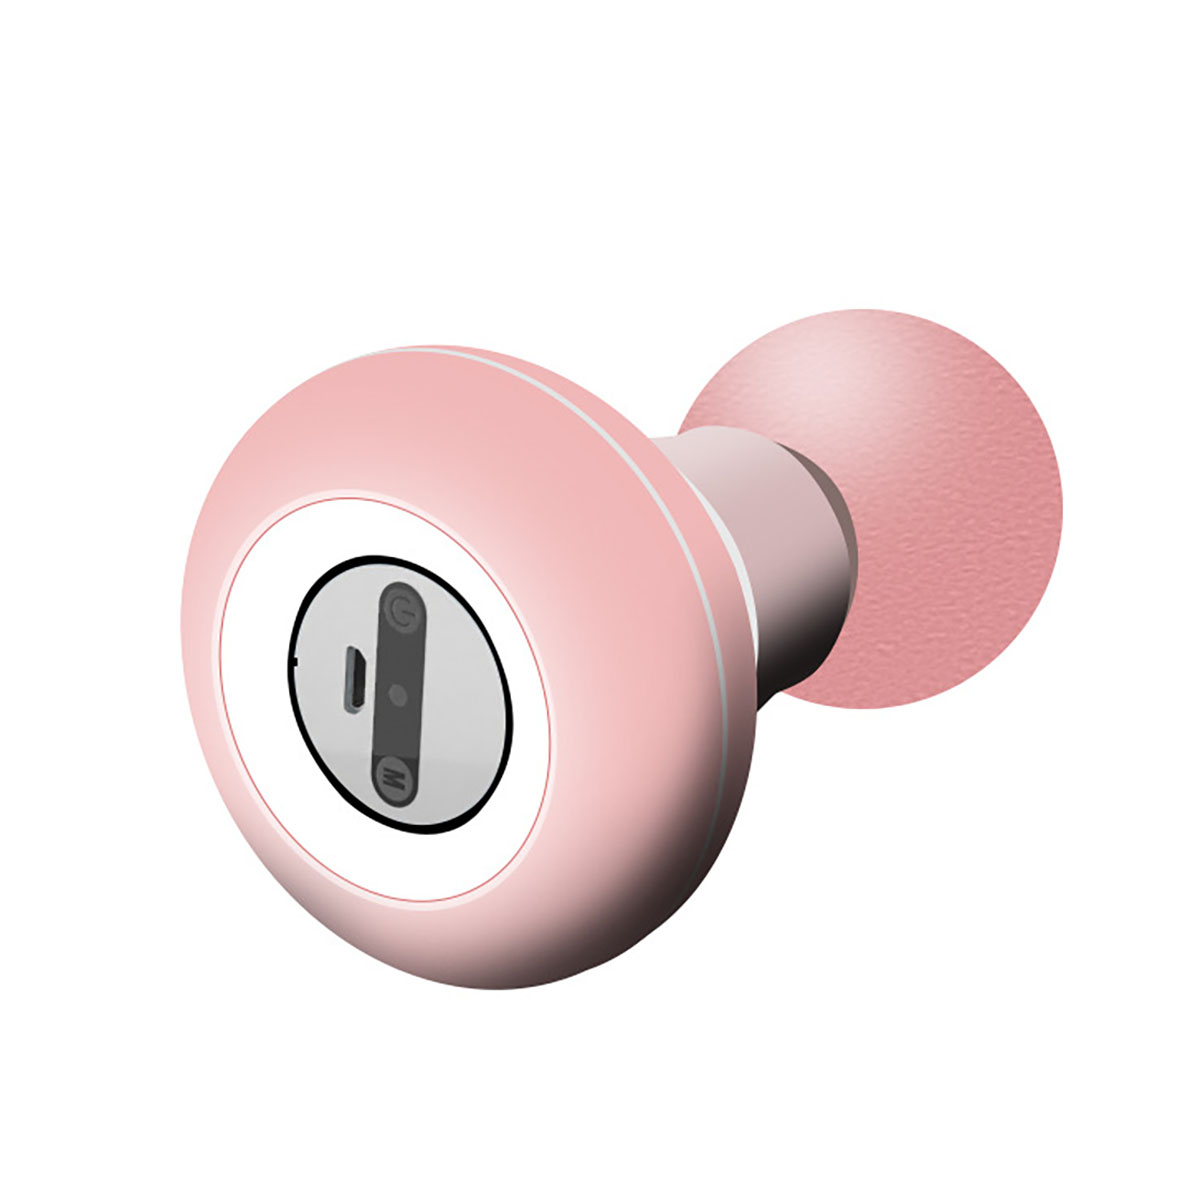 LACAMAX - Massagegerät Bequemer Starke Vibration, 6-stufige Pink mini Schaltung Faszienmesser